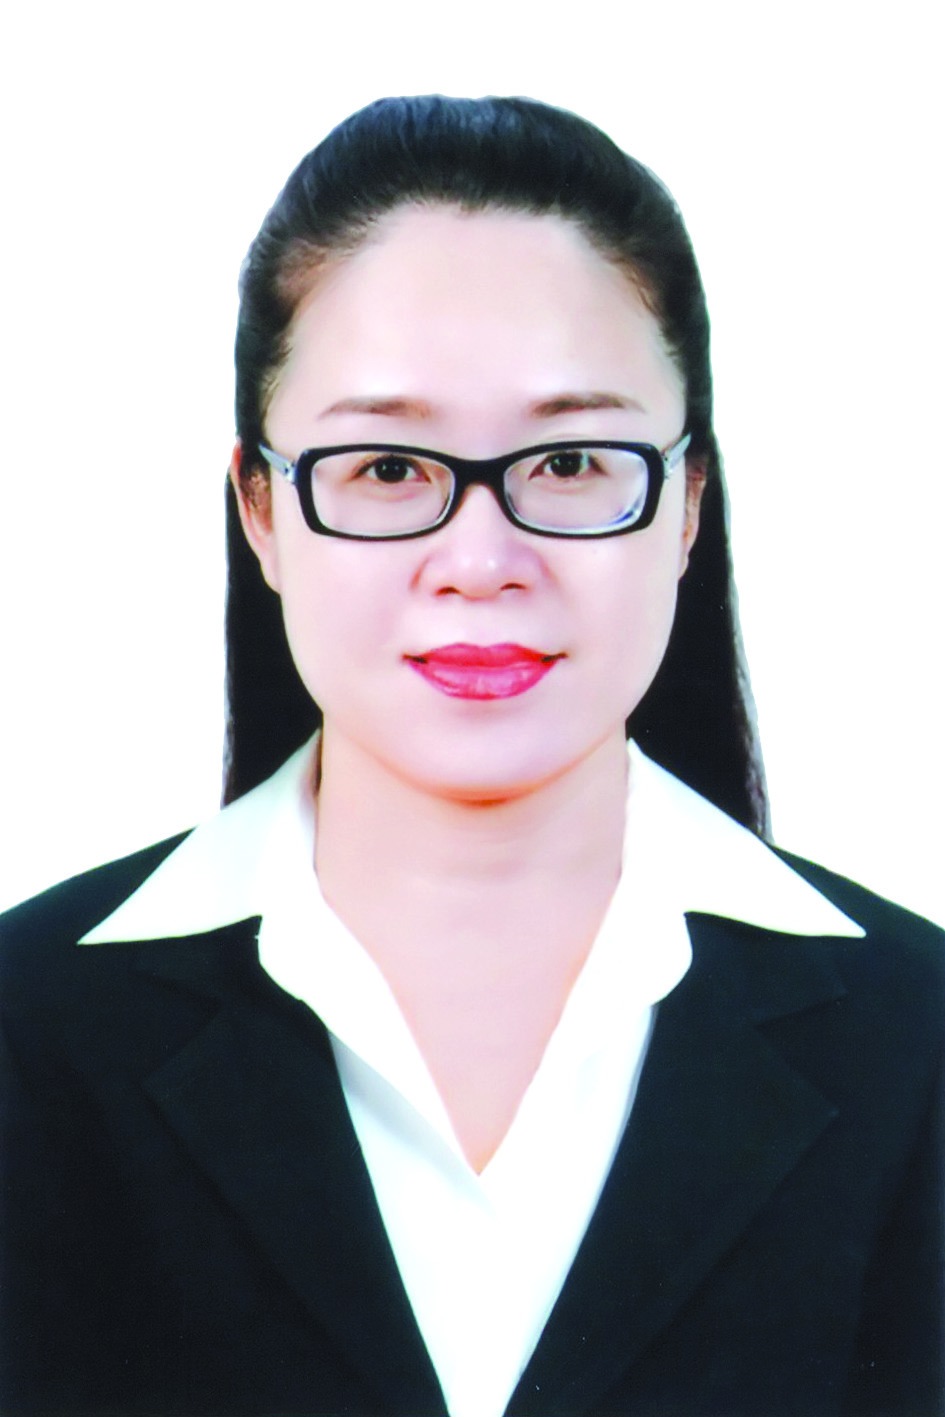 Chương trình hành động của Hiệu trưởng trường Cao đẳng nghệ thuật Hà Nội Dương Minh Ánh, ứng cử viên đại biểu HĐND TP Hà Nội nhiệm kỳ 2021 - 2026 - Ảnh 1